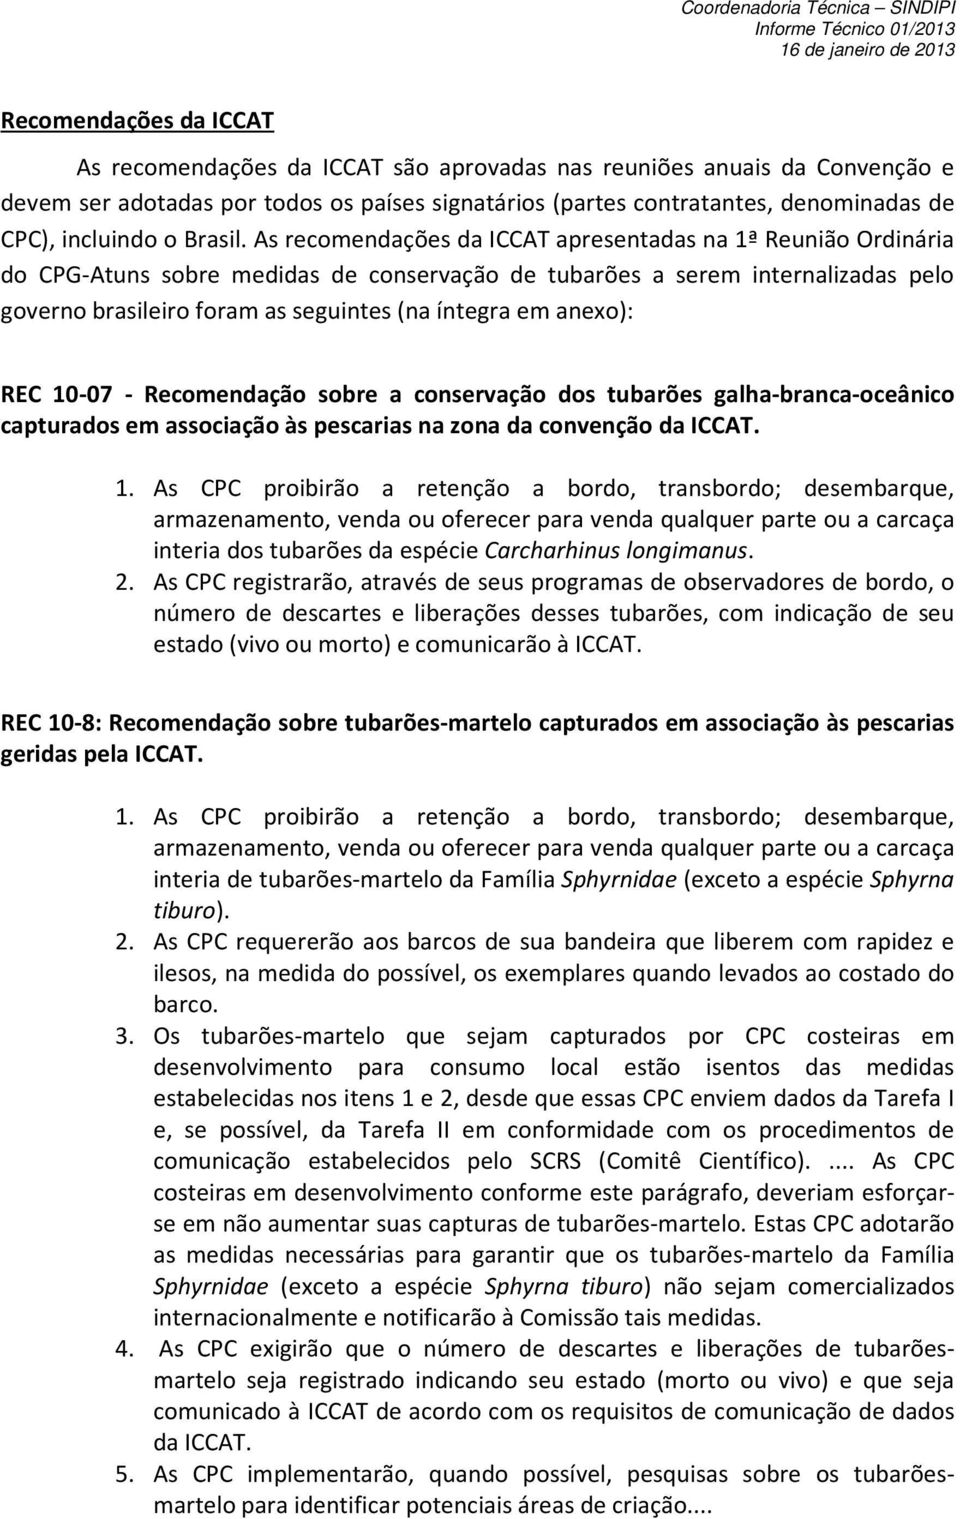 As recomendações da ICCAT apresentadas na 1ª Reunião Ordinária do CPG-Atuns sobre medidas de conservação de tubarões a serem internalizadas pelo governo brasileiro foram as seguintes (na íntegra em